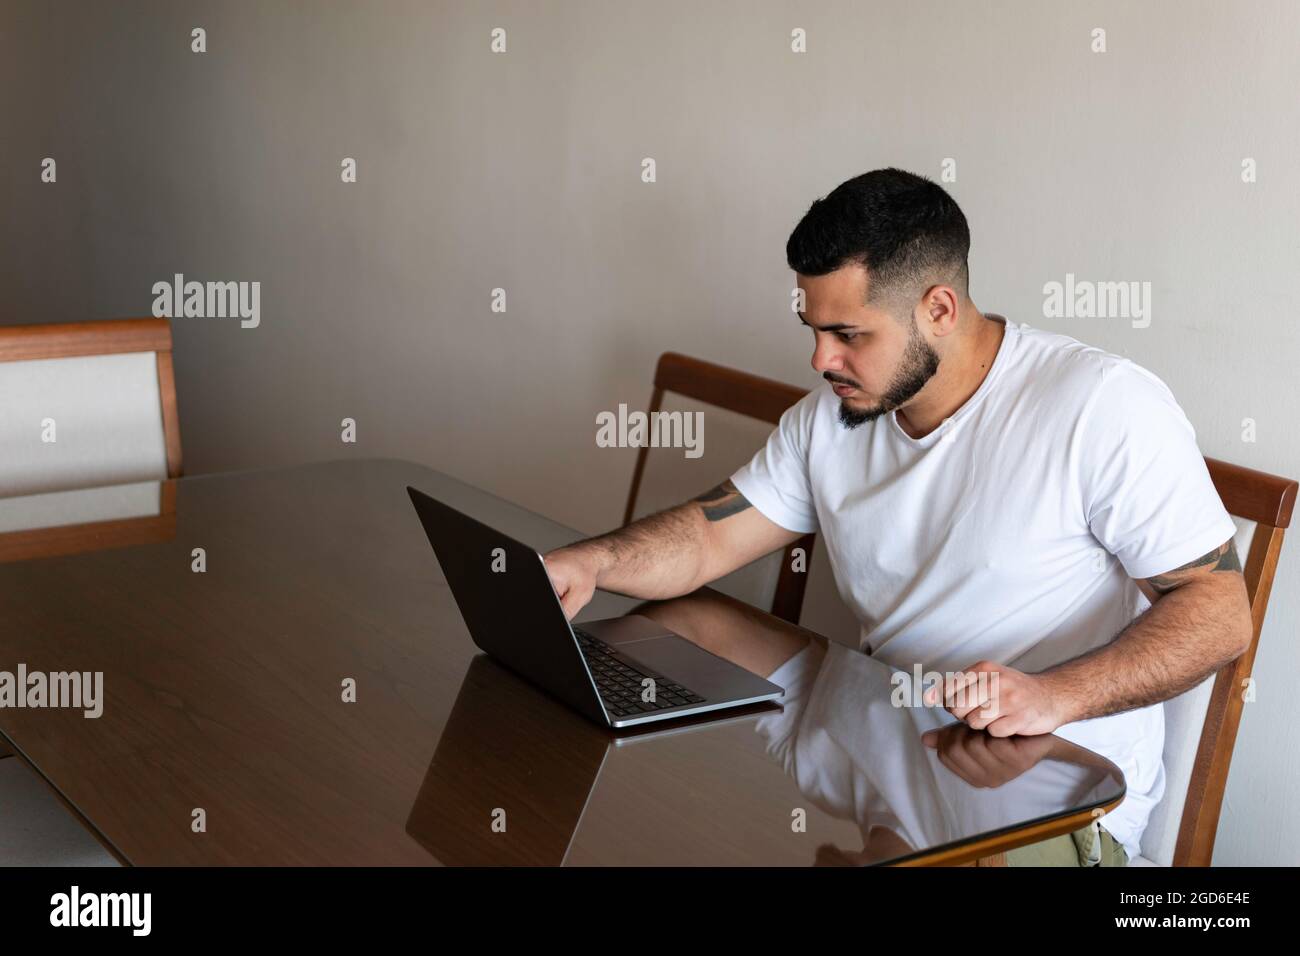 Latino homme avec des tatouages qui fingerent un écran d'ordinateur portable avec un visage sérieux Banque D'Images